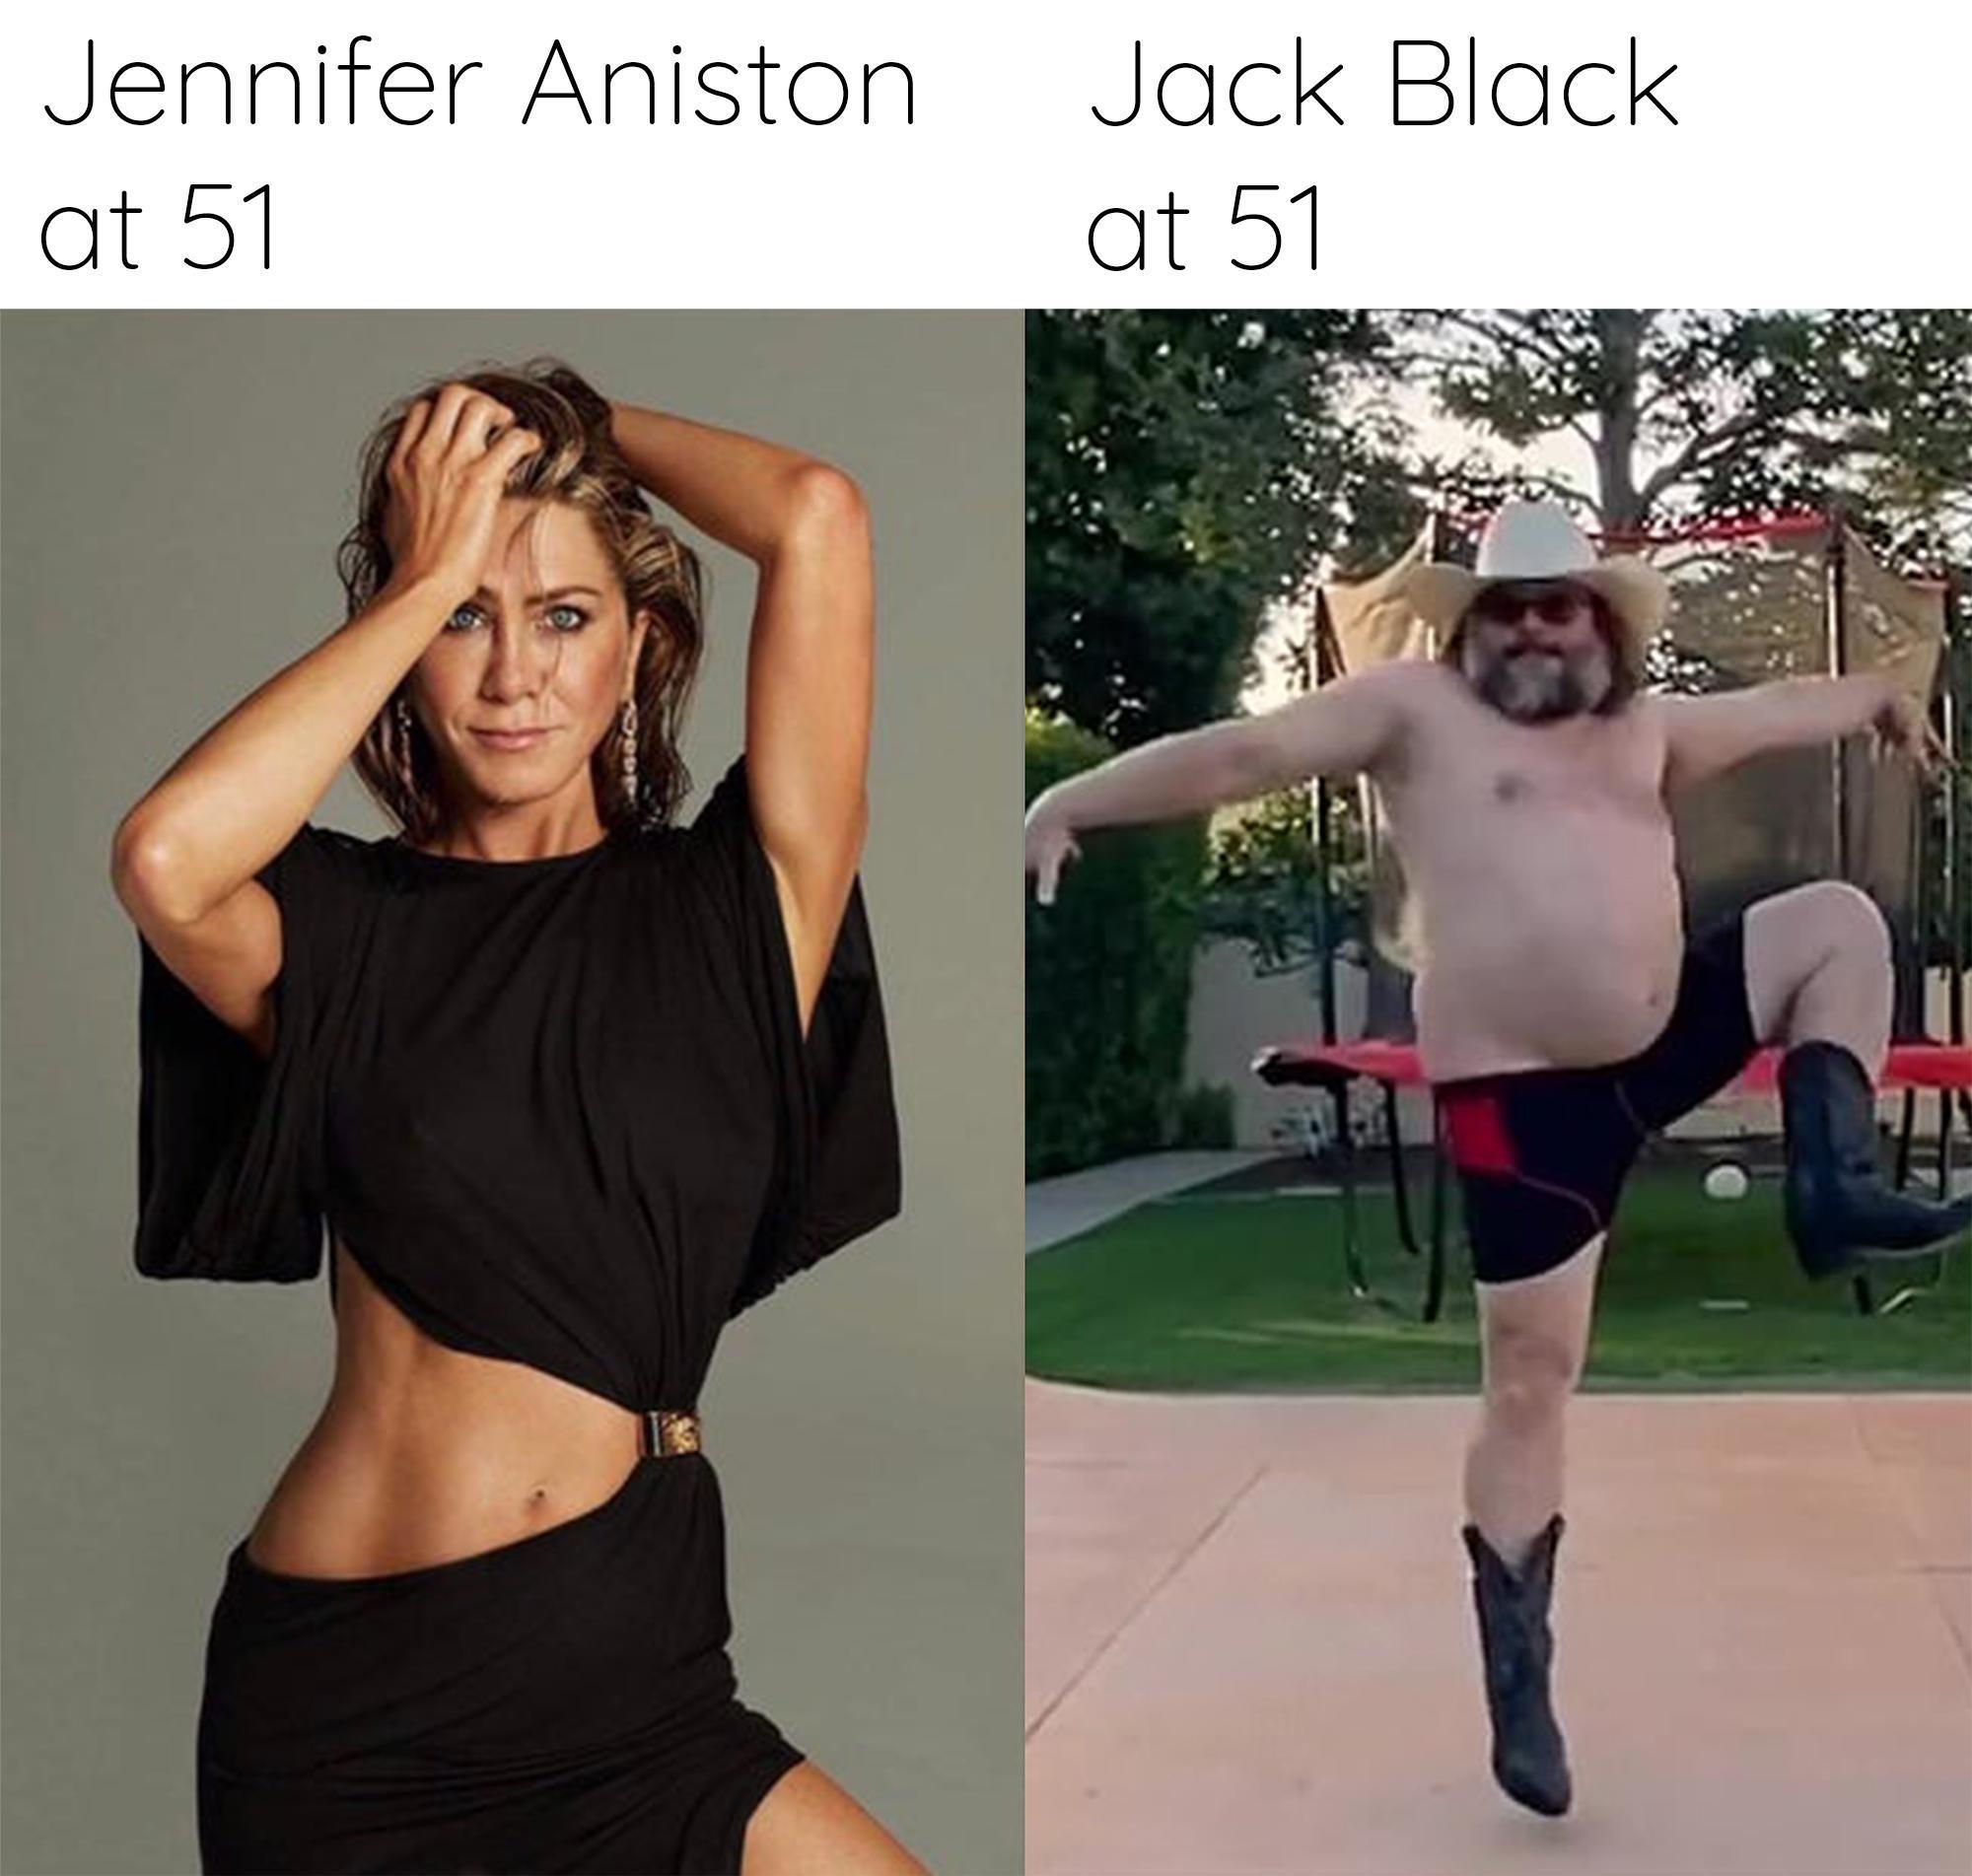 dank memes - jennifer aniston at 51 jack black - Jennifer Aniston at 51 Jack Black at 51